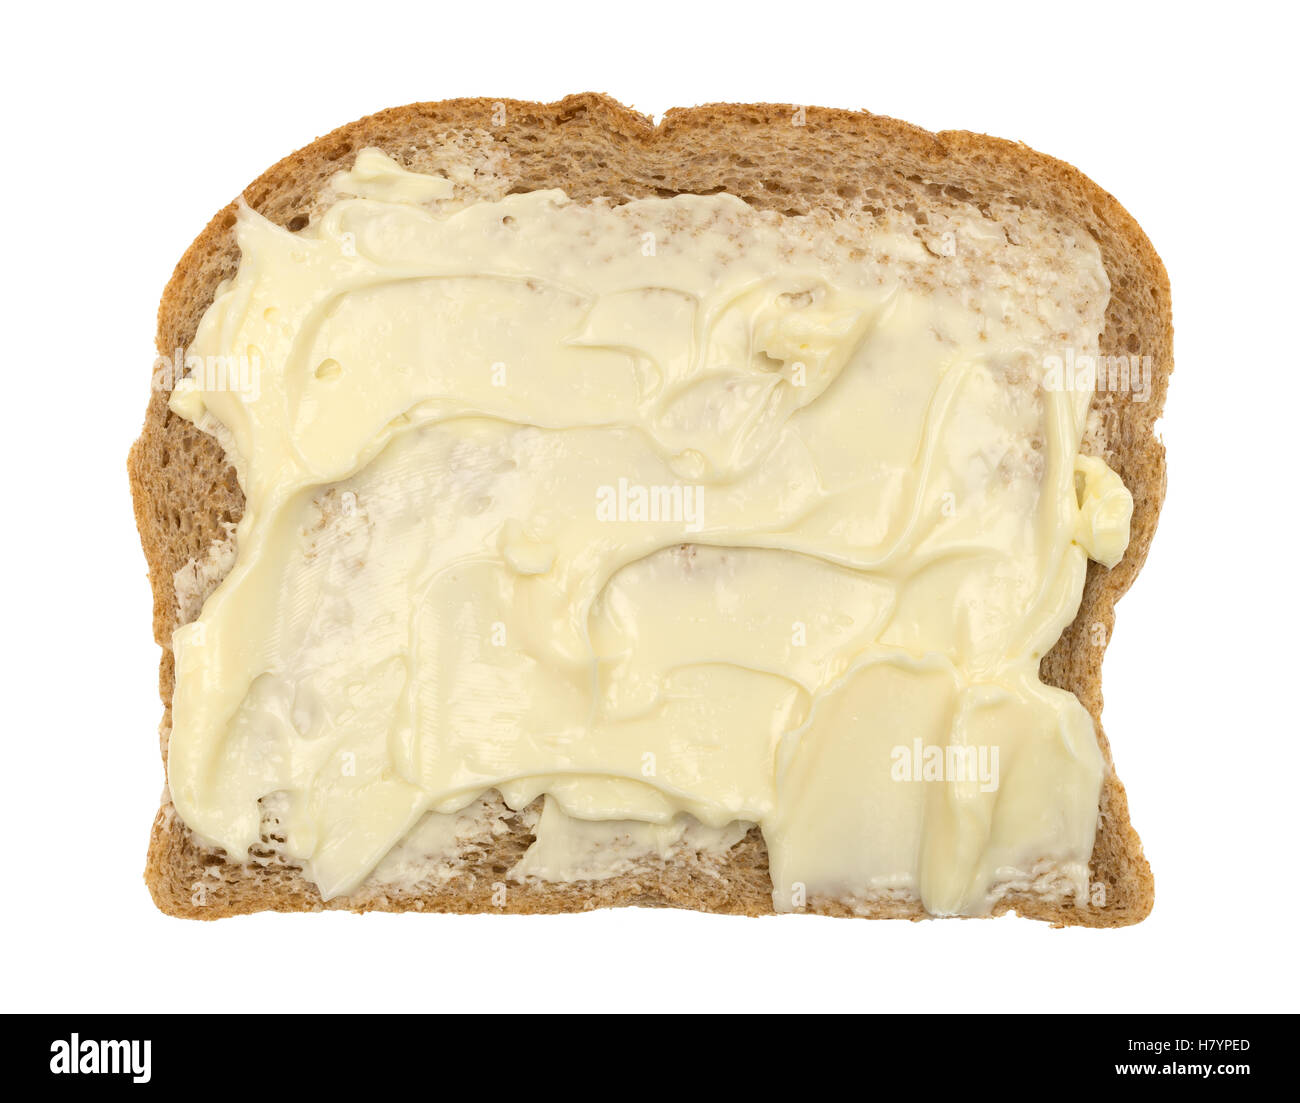 Vue supérieure d'une tranche de pain de blé avec de la mayonnaise et de la margarine isolé sur un fond blanc. Banque D'Images